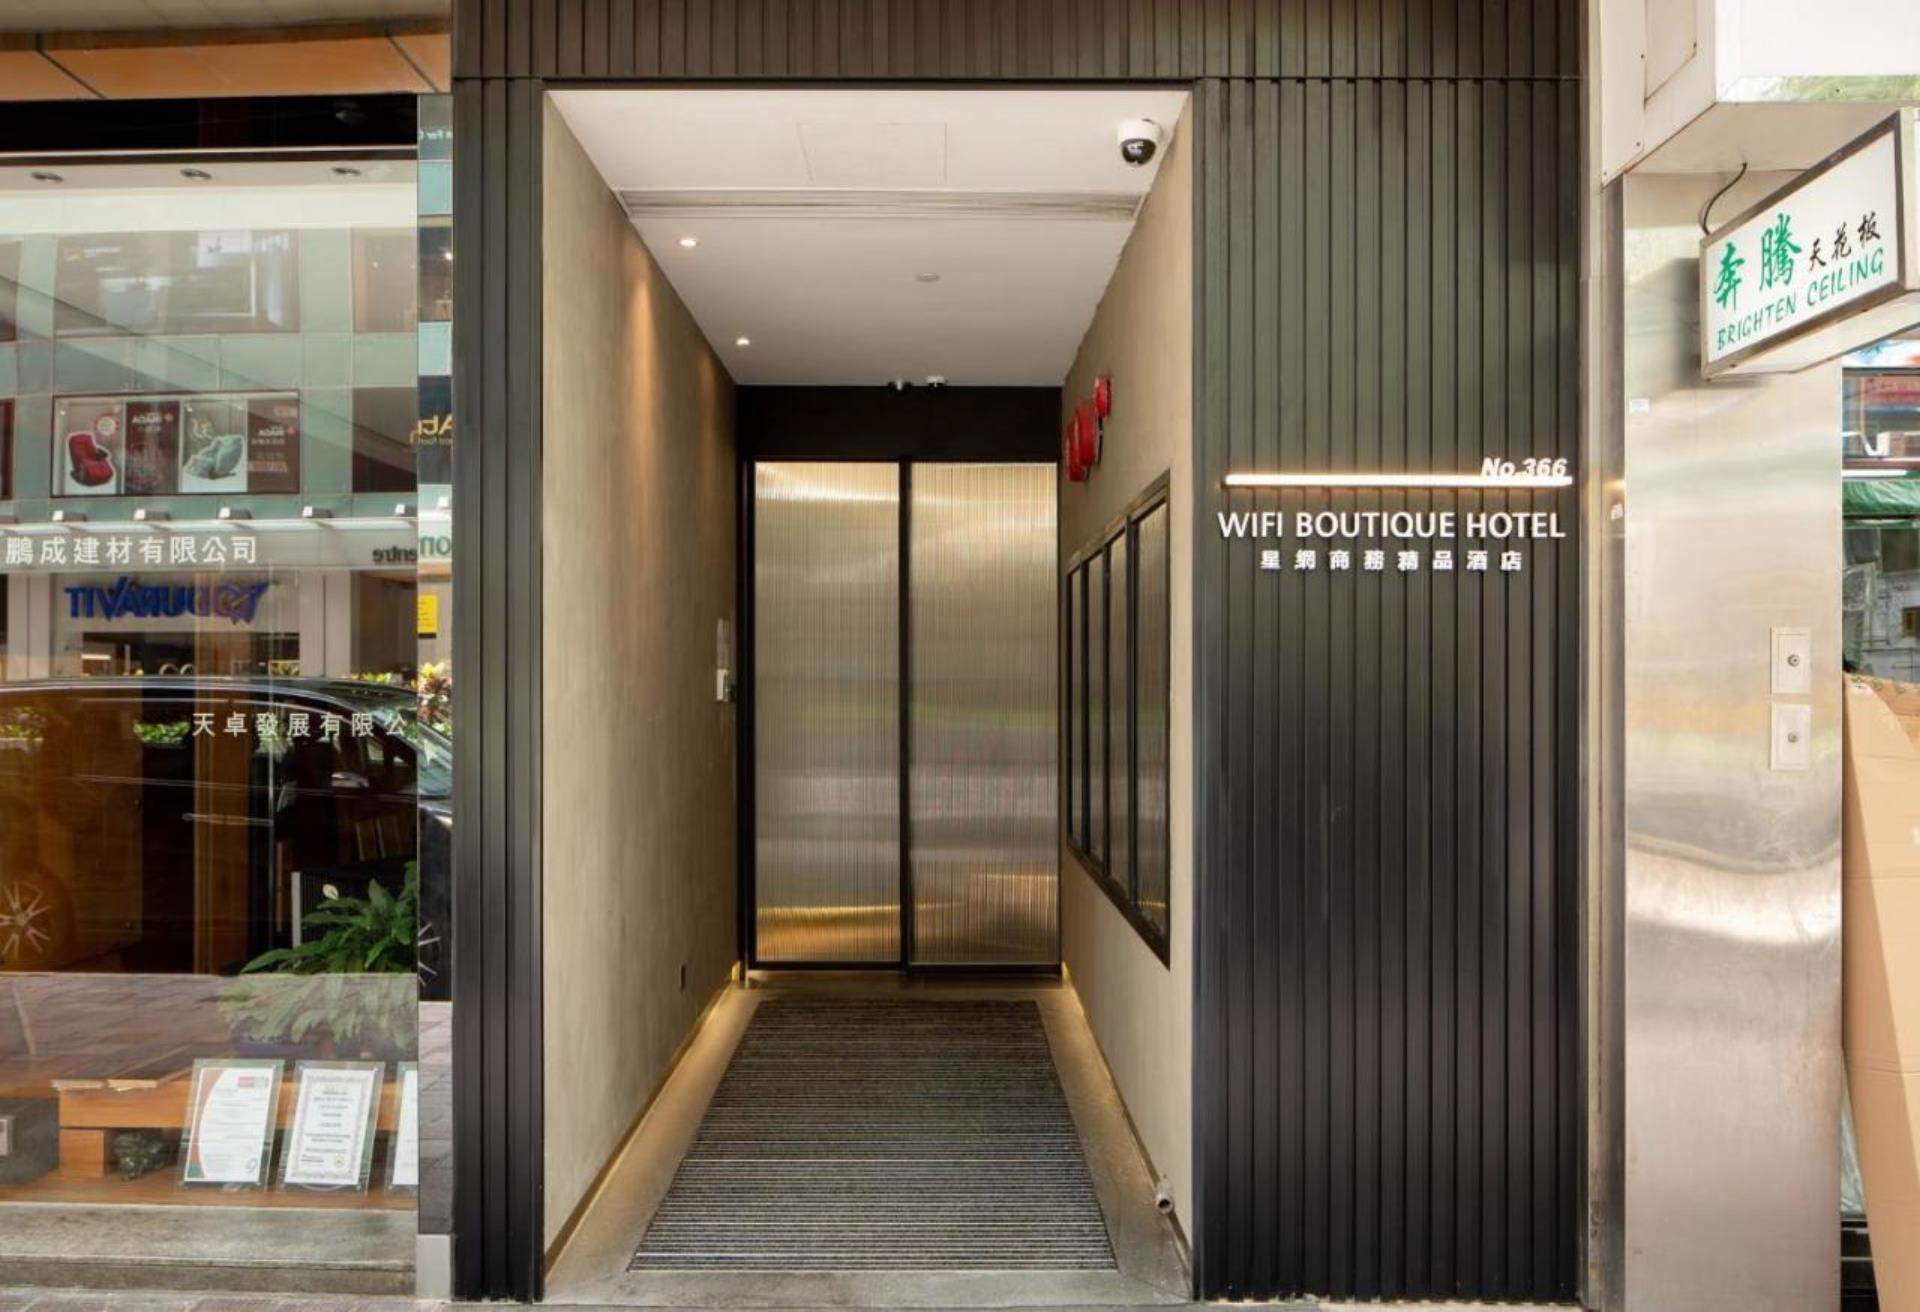 星網商務精品酒店,香港平價高CP值酒店推介,WIFI BOUTIQUE HOTEL